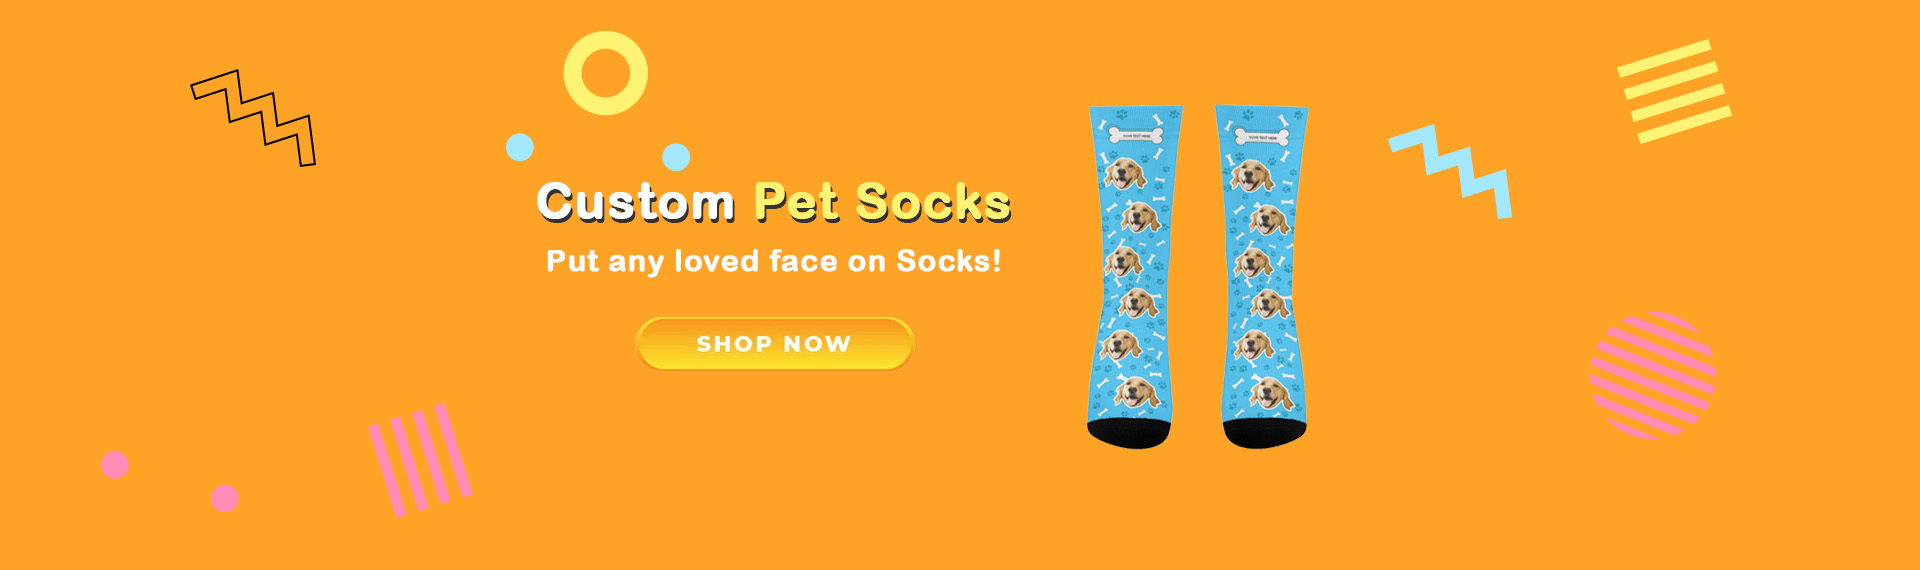 custom pet socks